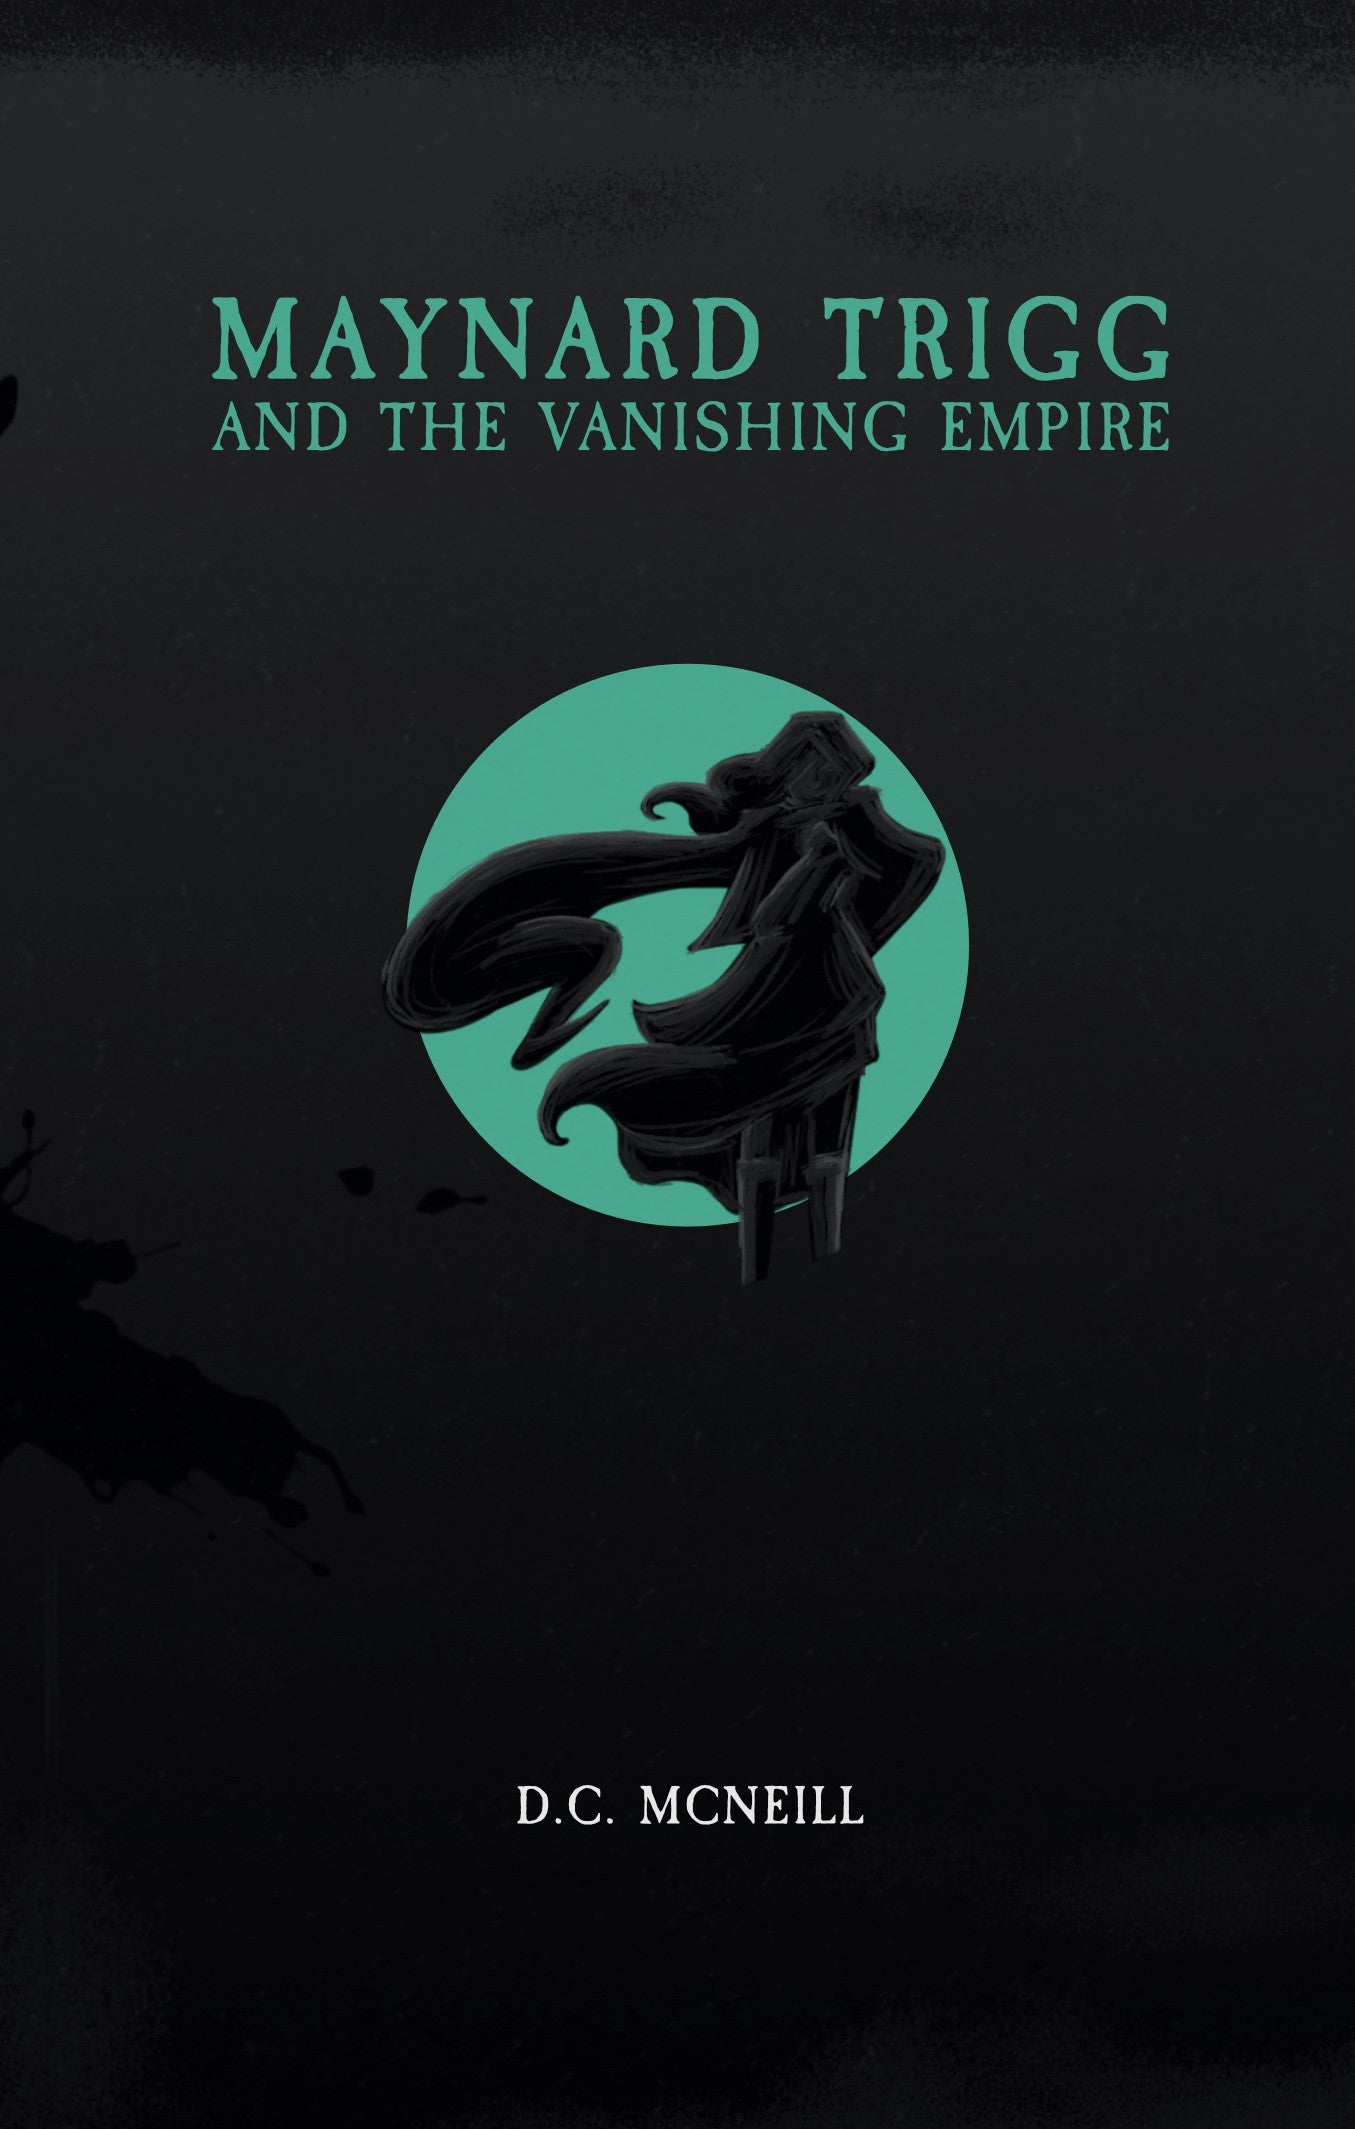 Maynard Trigg and The Vanishing Empire